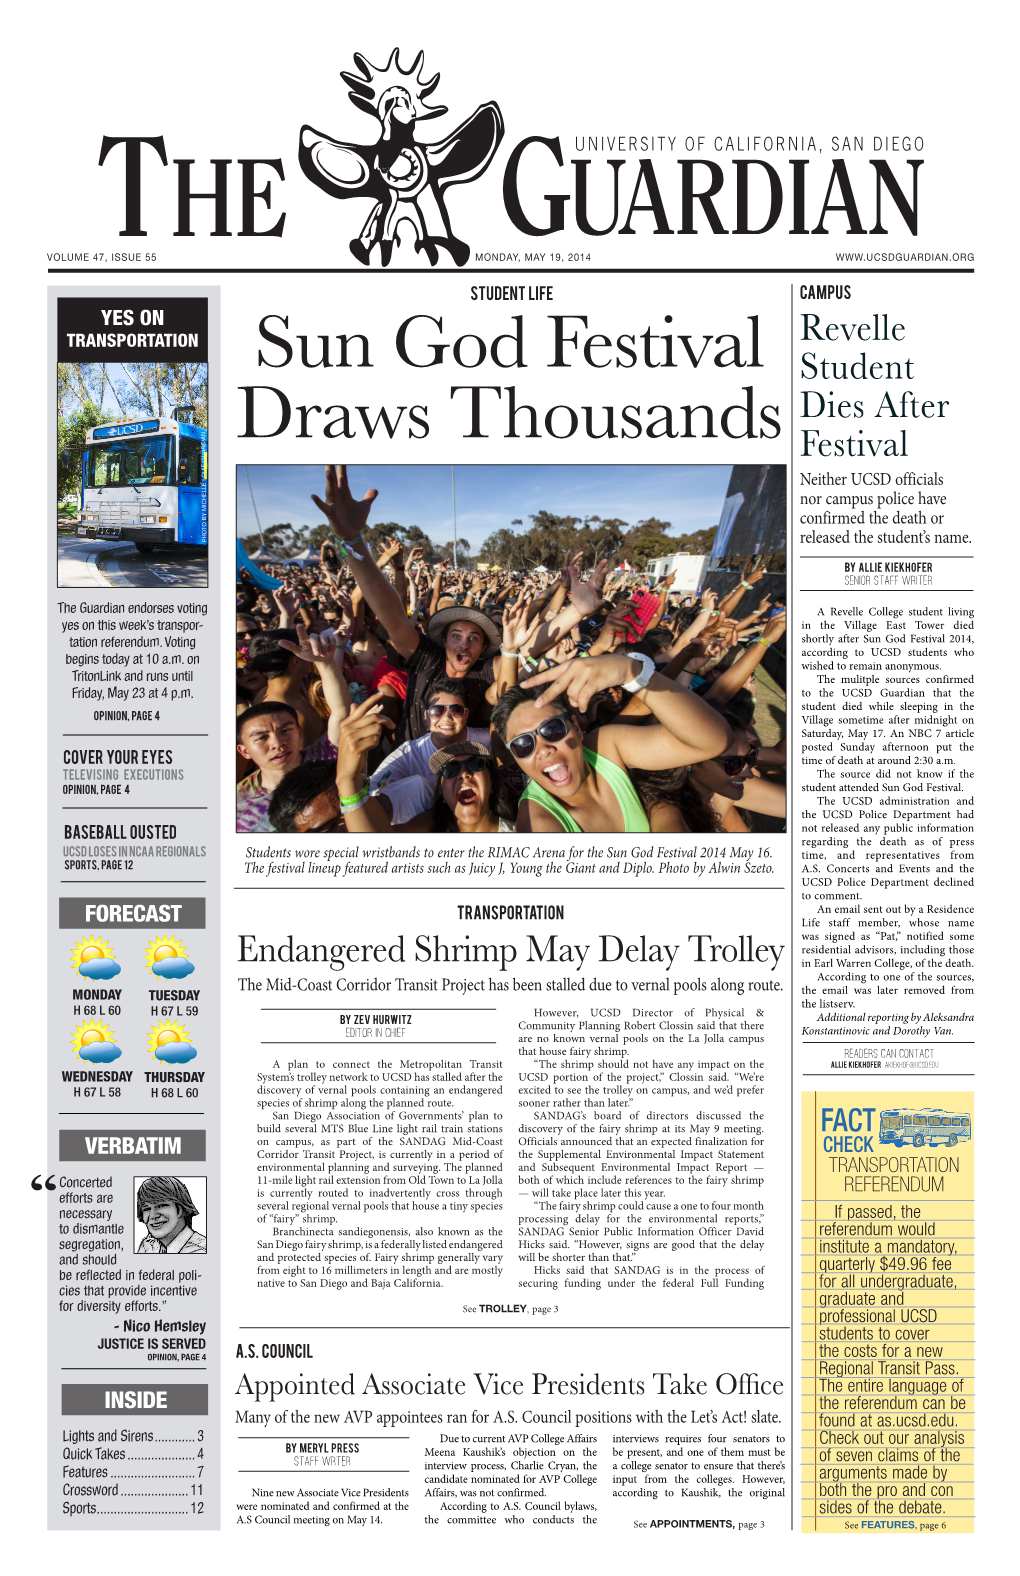 Sun God Festival Draws Thousands